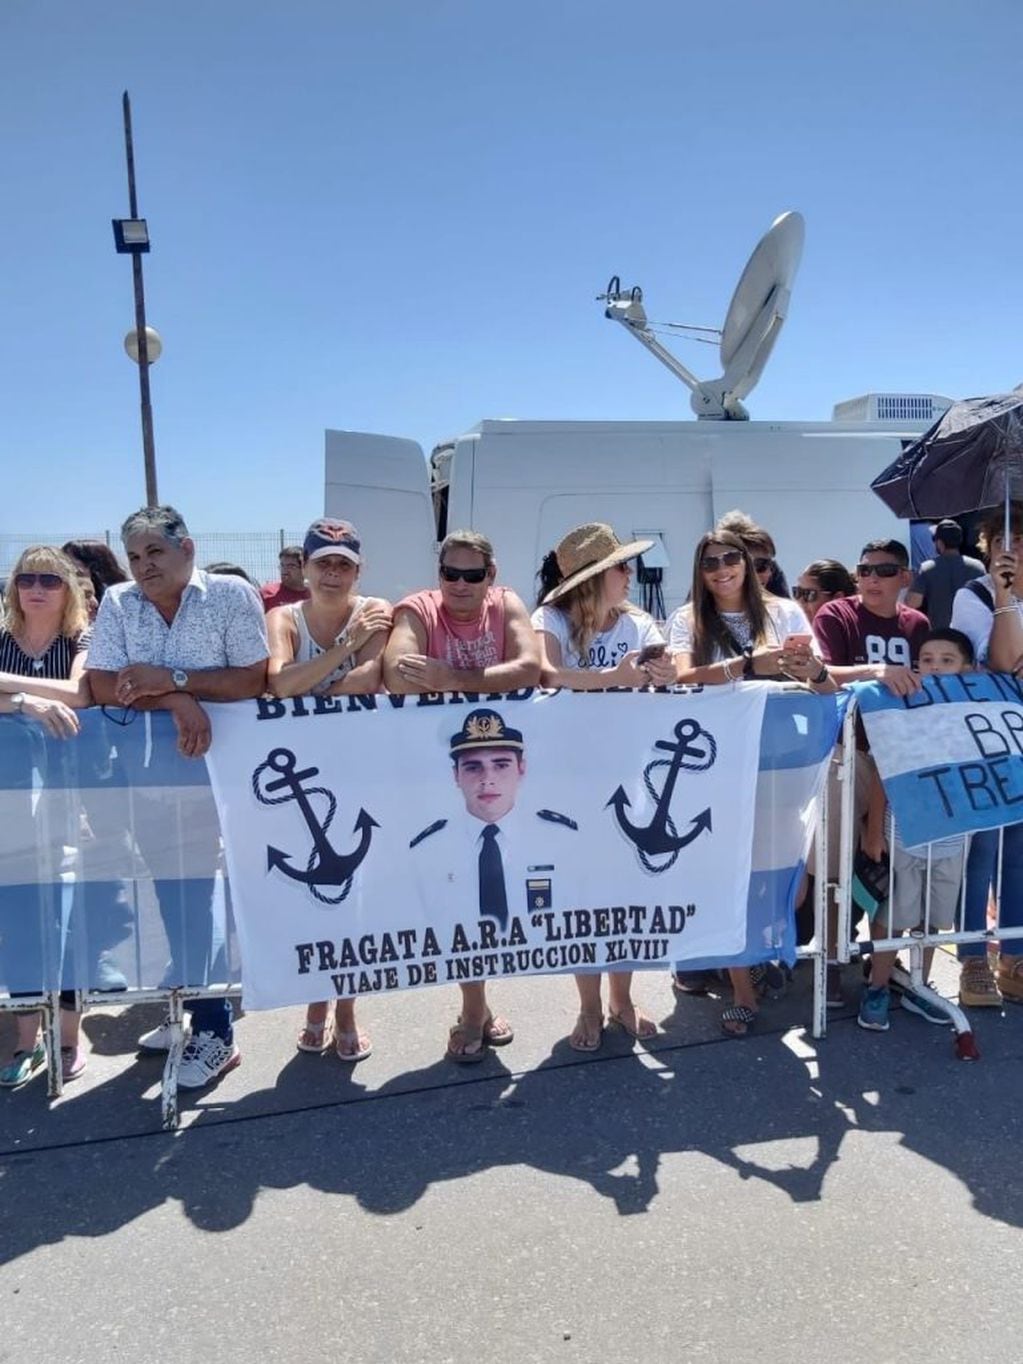 La Fragata Libertad llegó a Mar del Plata y Rossi encabezó el acto de bienvenida. (CIMECO)